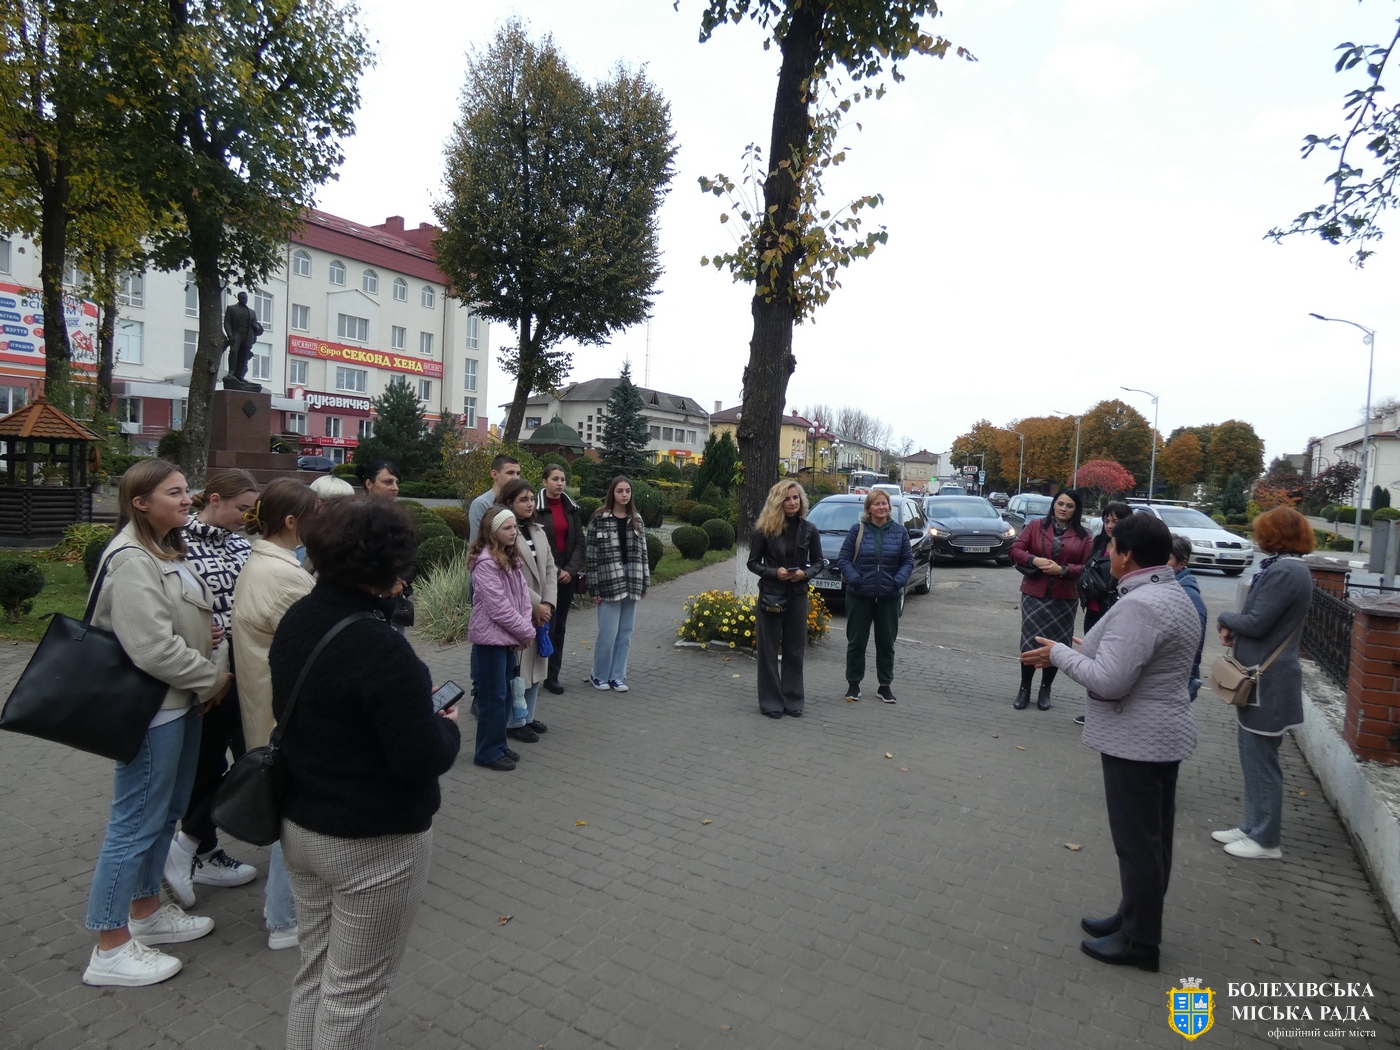 Відбулася екскурсія новоствореним культурно-туристичним маршрутом «Шляхами Наталії Кобринської в м. Болехові»